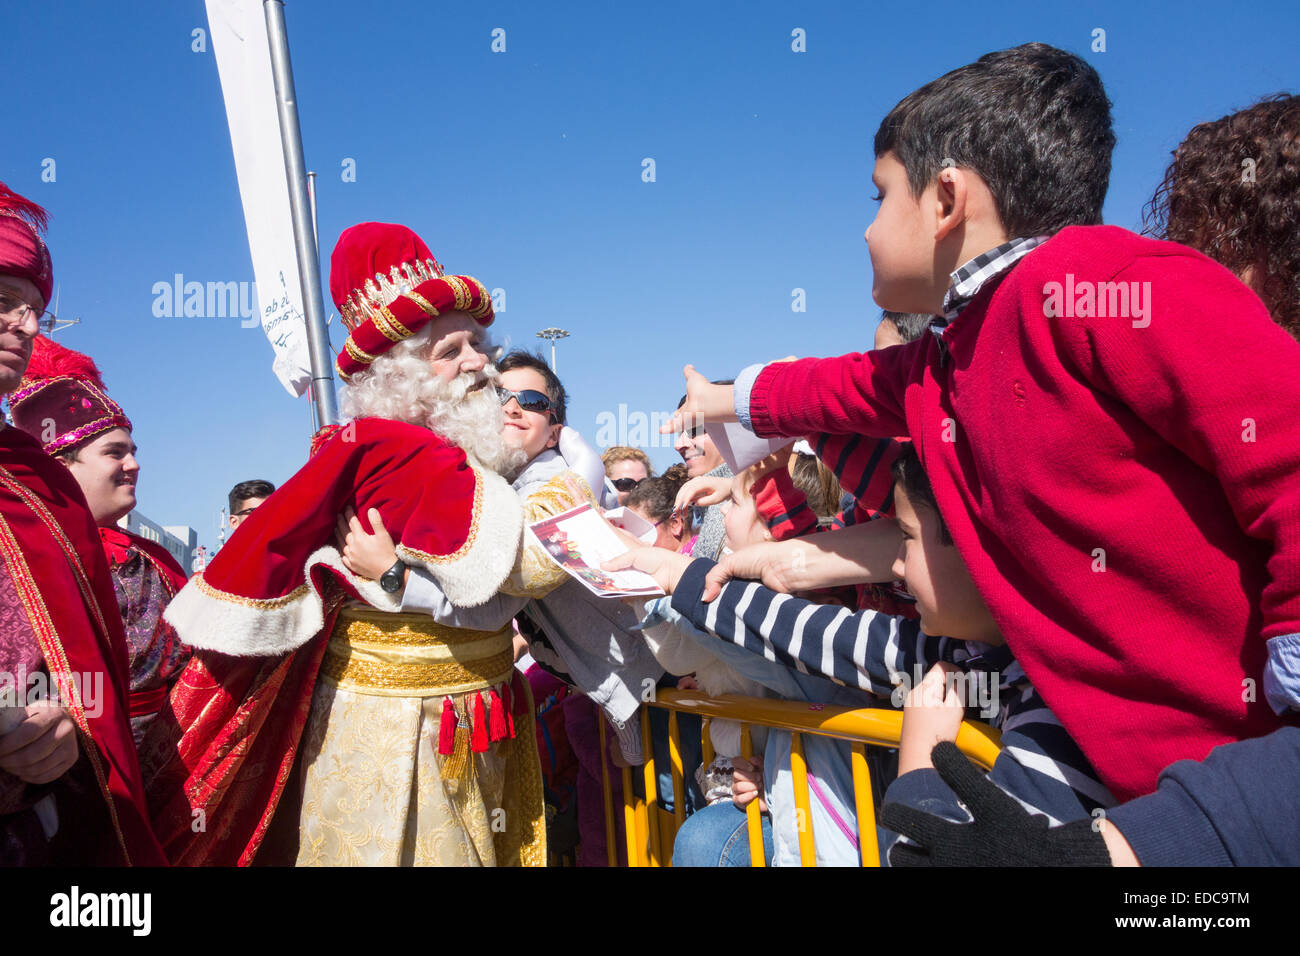 Los Reyes Magos ( tre re o tre saggi) sfilano in Spagna Foto Stock